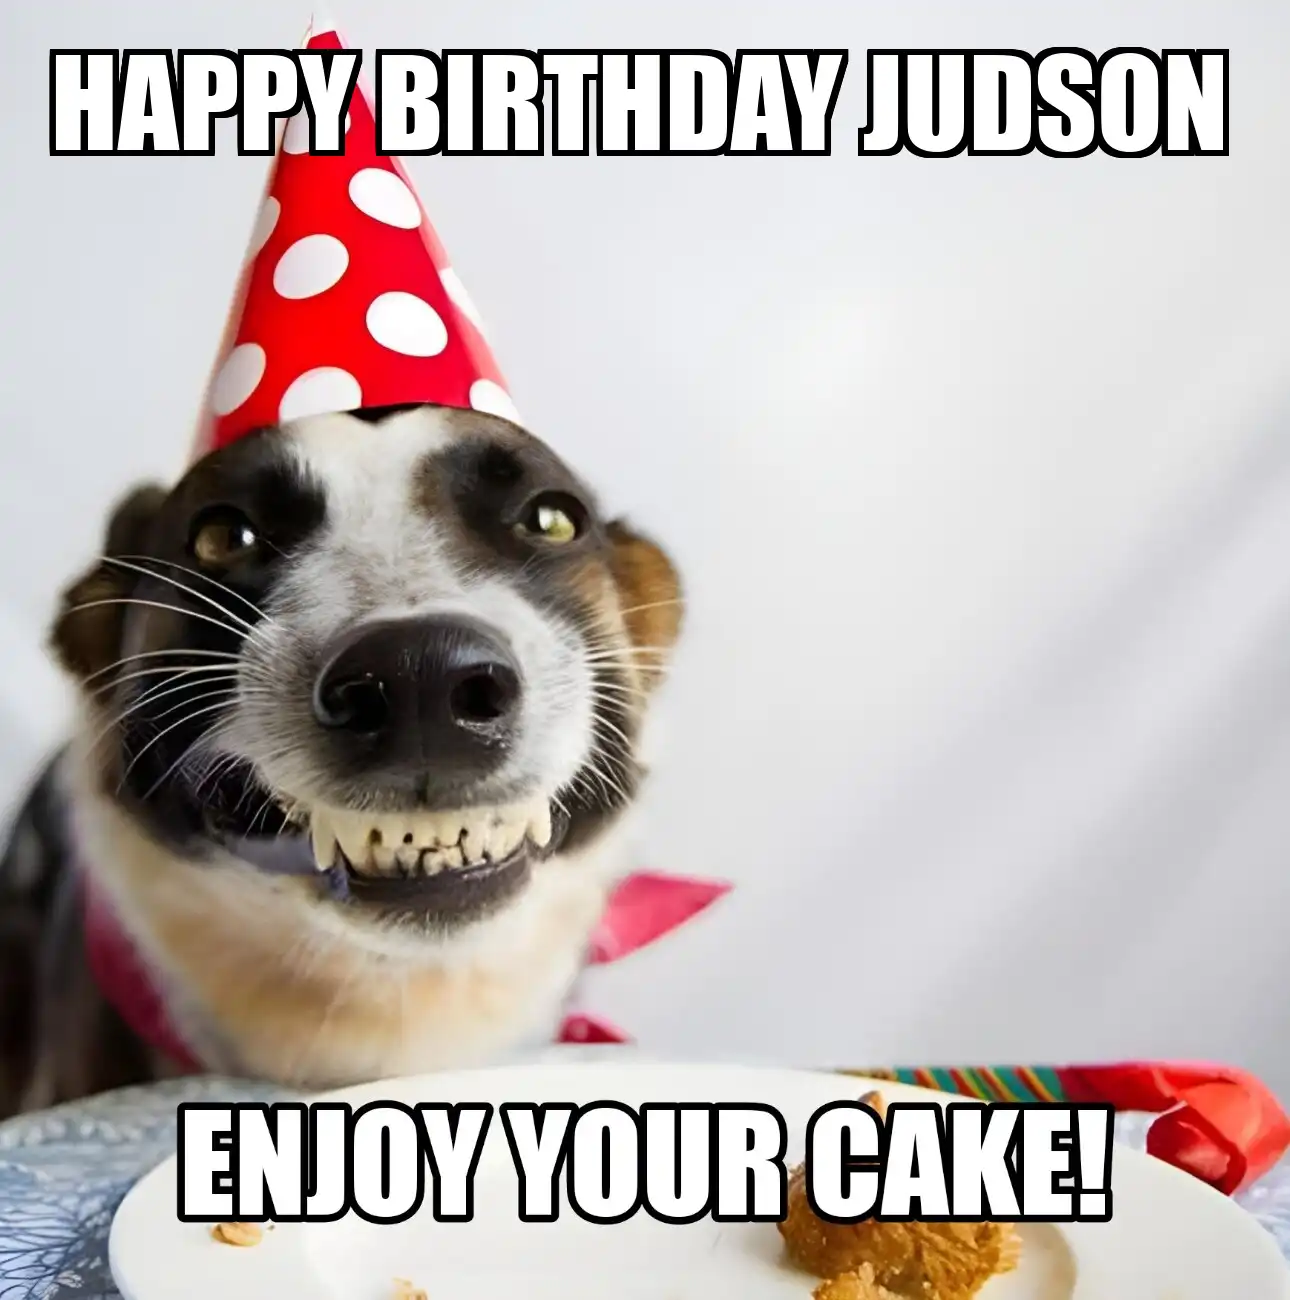 Happy Birthday Judson Enjoy Your Cake Dog Meme